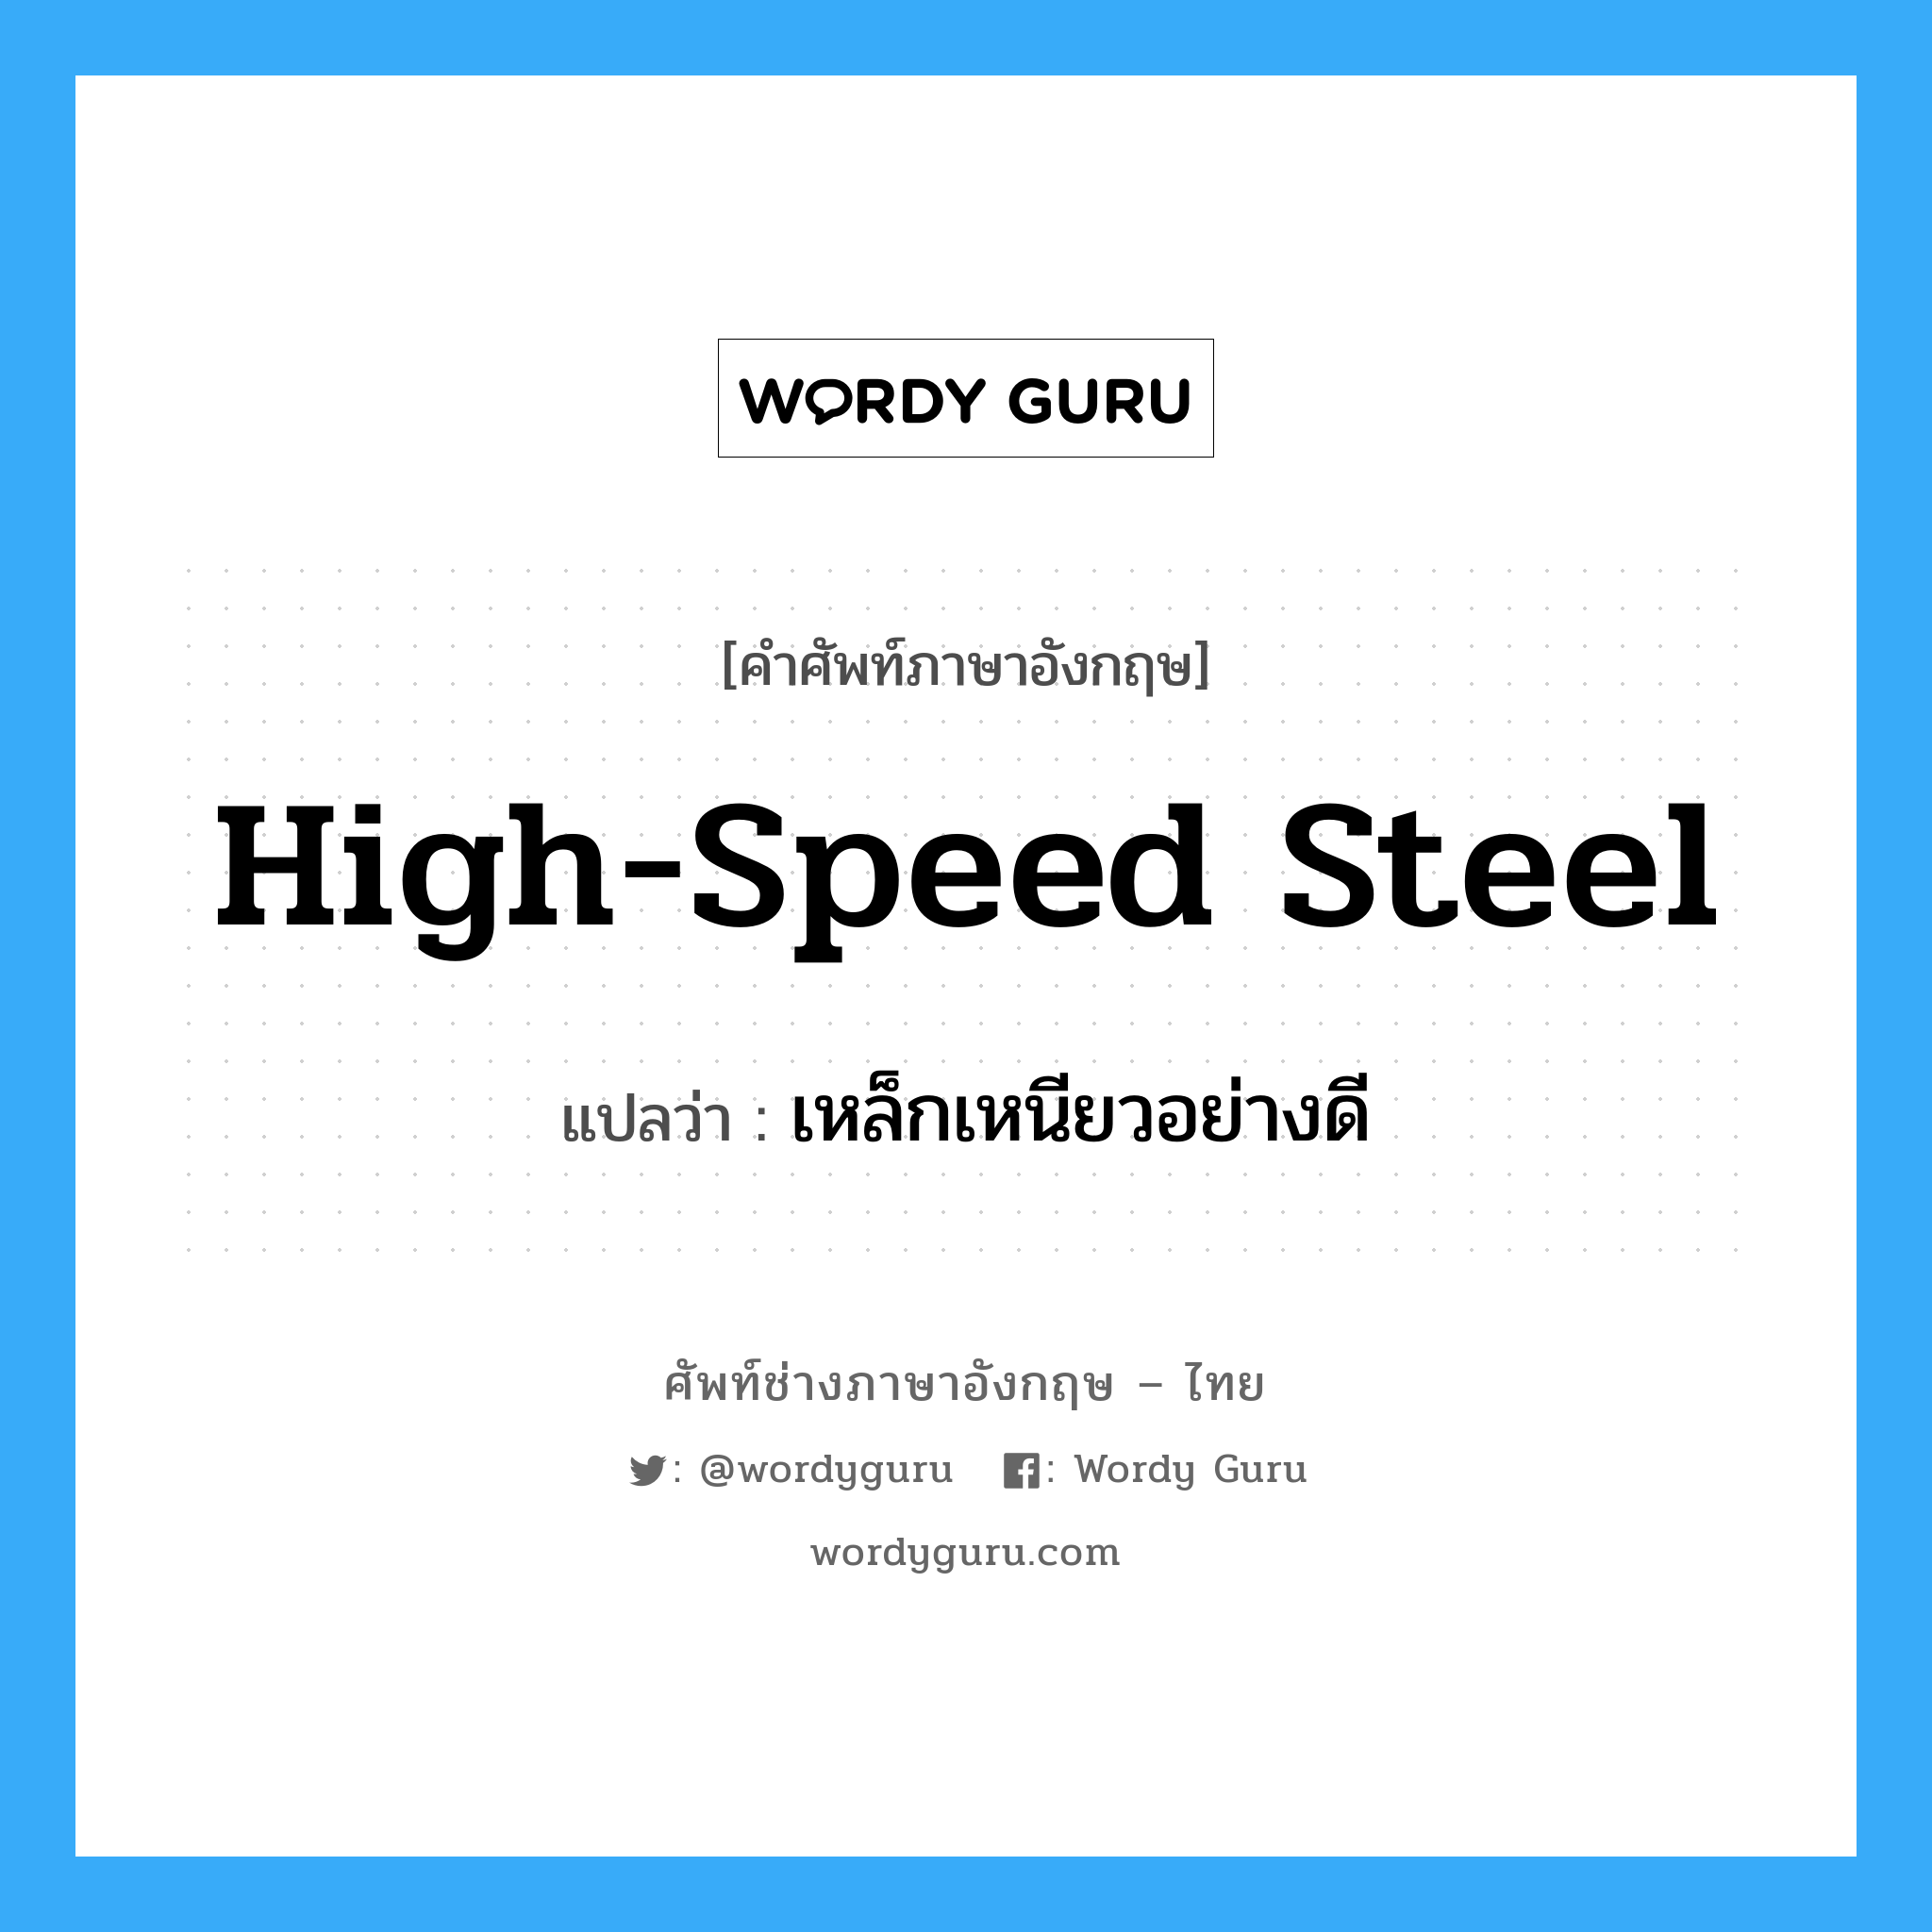 high-speed steel แปลว่า?, คำศัพท์ช่างภาษาอังกฤษ - ไทย high-speed steel คำศัพท์ภาษาอังกฤษ high-speed steel แปลว่า เหล็กเหนียวอย่างดี